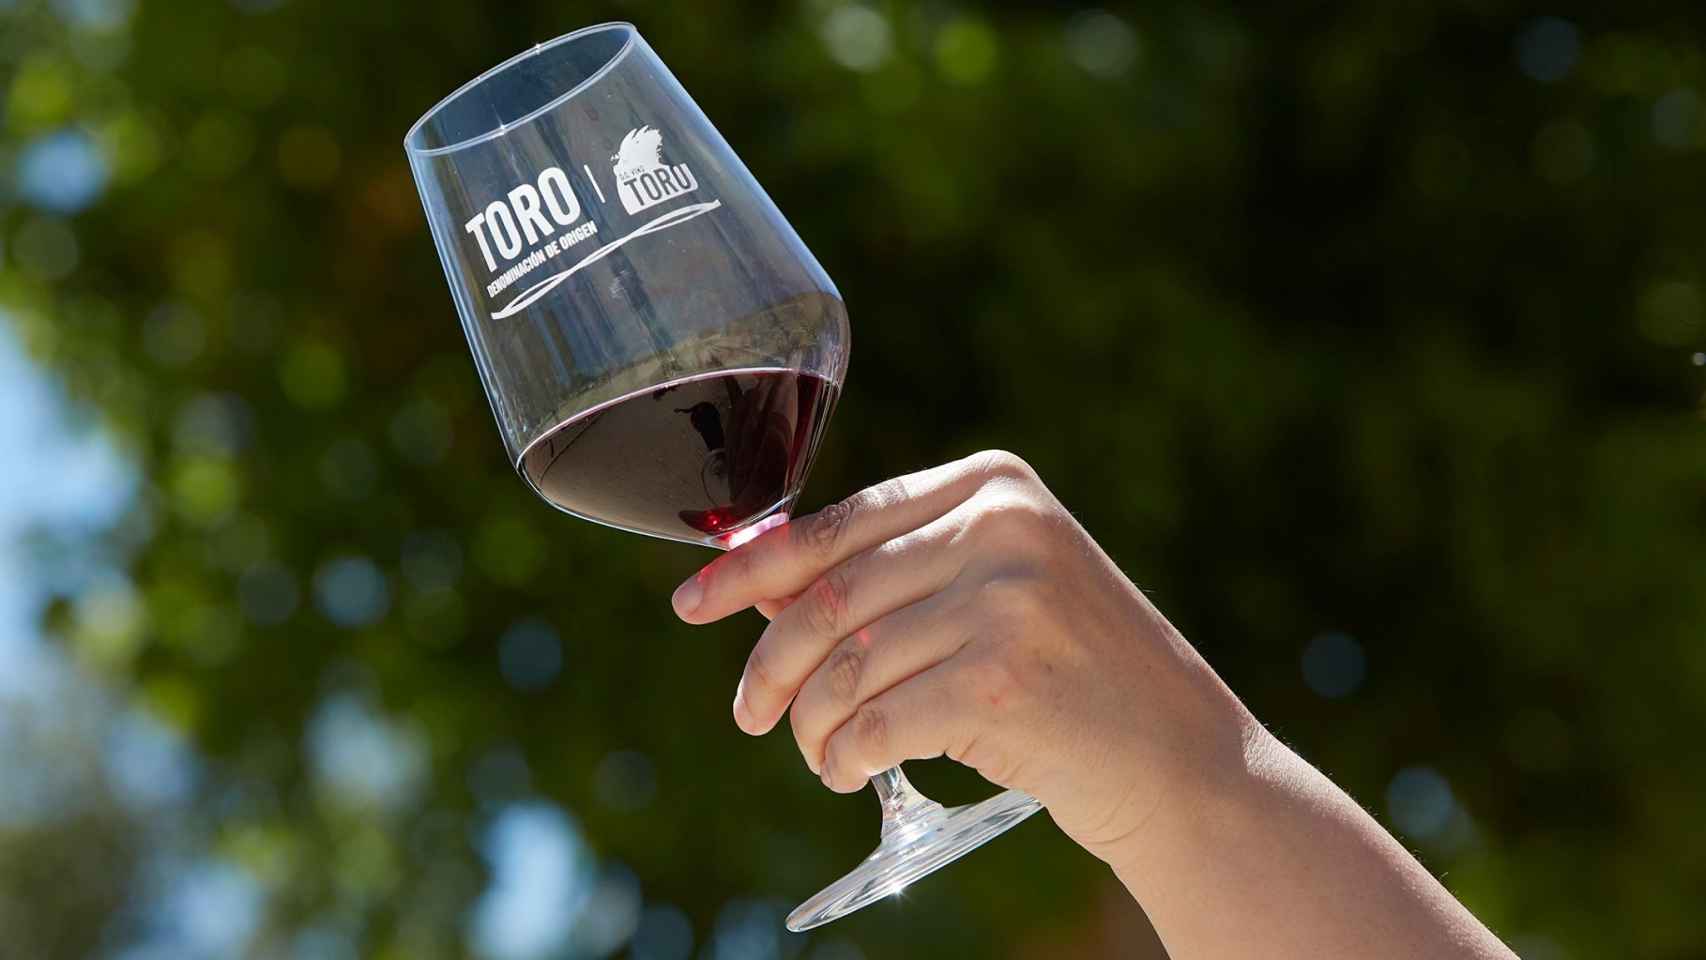 Los vinos de Toro mezclan carácter y elegancia.